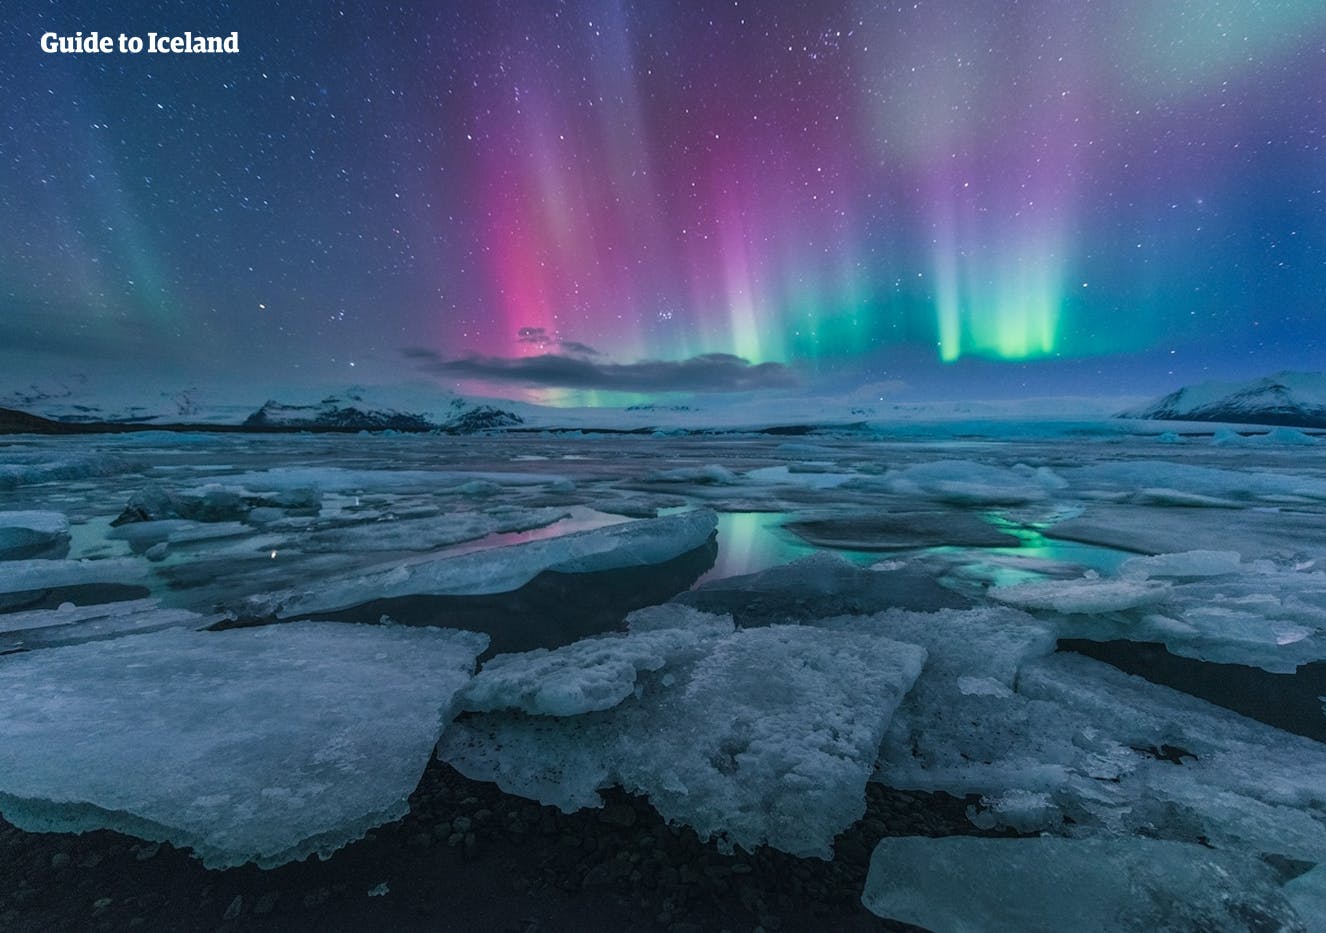 บางทีคุณอาจมีโอกาสได้เห็นแสงเหนือเต้นรำอยู่เหนือทะเลสาบธารน้ำแข็งโจกุลซาลอน ในทัวร์ราคาประหยัดช่วงฤดูหนาวนี้.